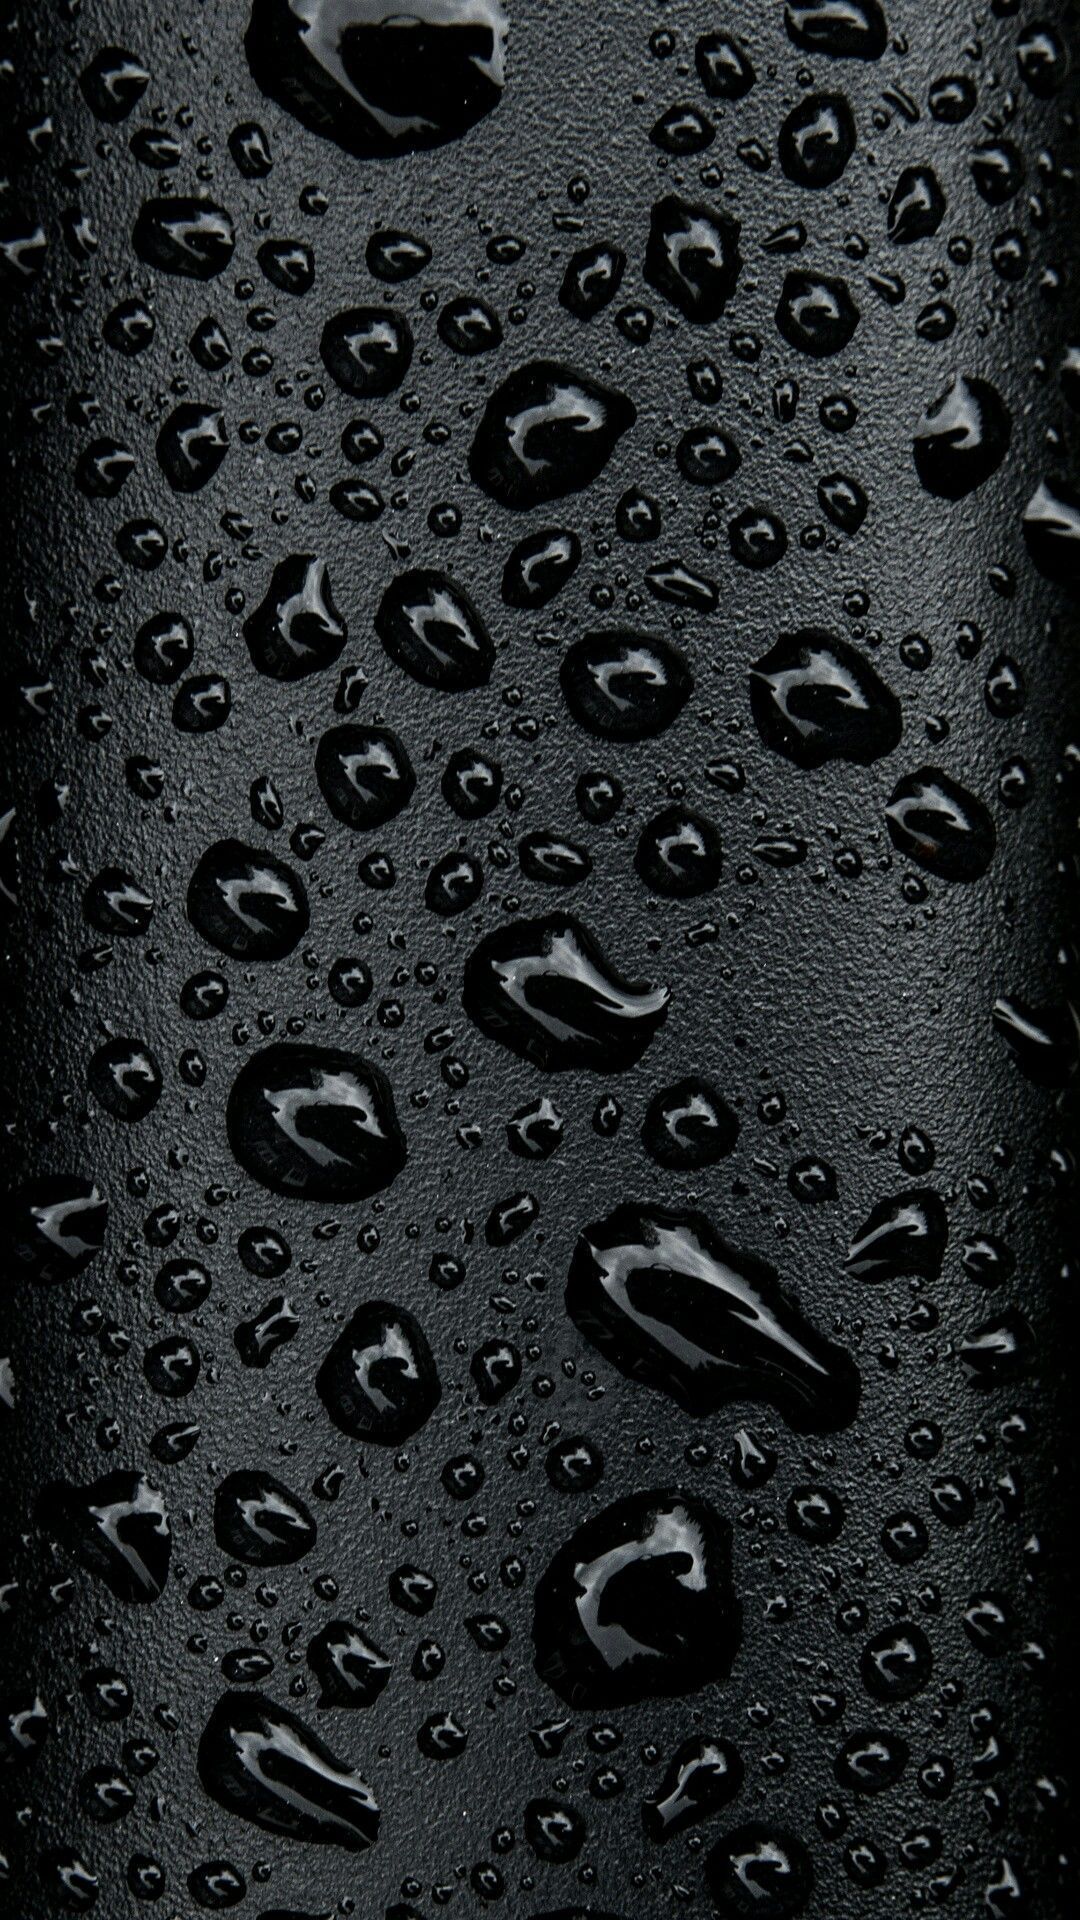 iphone x wallpaper 4k zedge New Black Water Droplets Wallpaper for phones ㊗